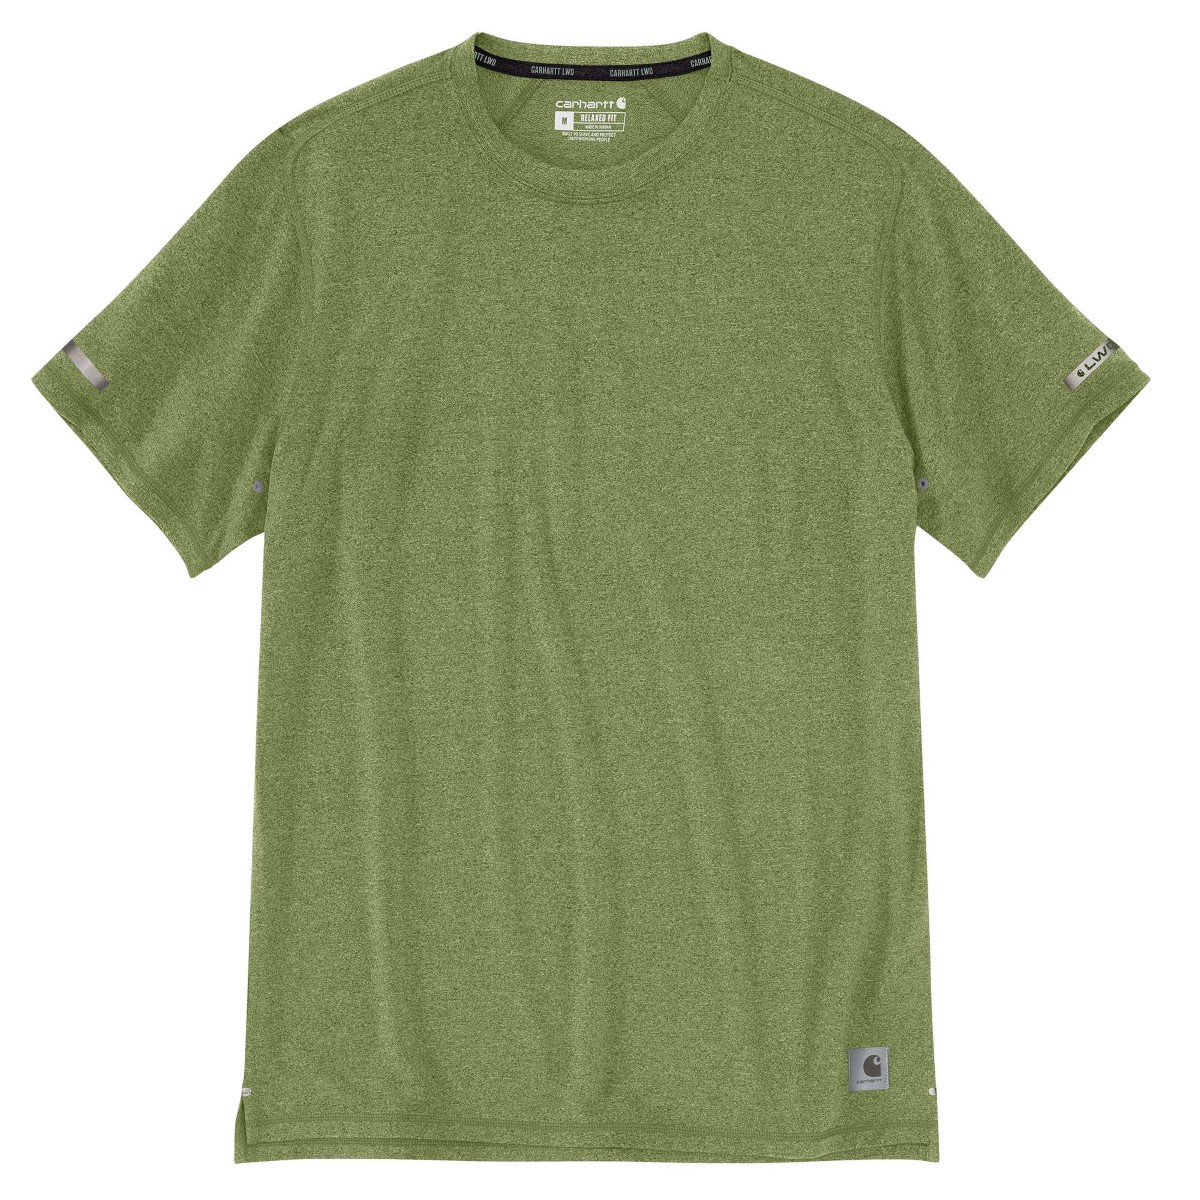 Carhartt Men's 105858 Carhartt Lwd Relaxed Fit Short-Sleeve T-Shirt, Extended Sizes